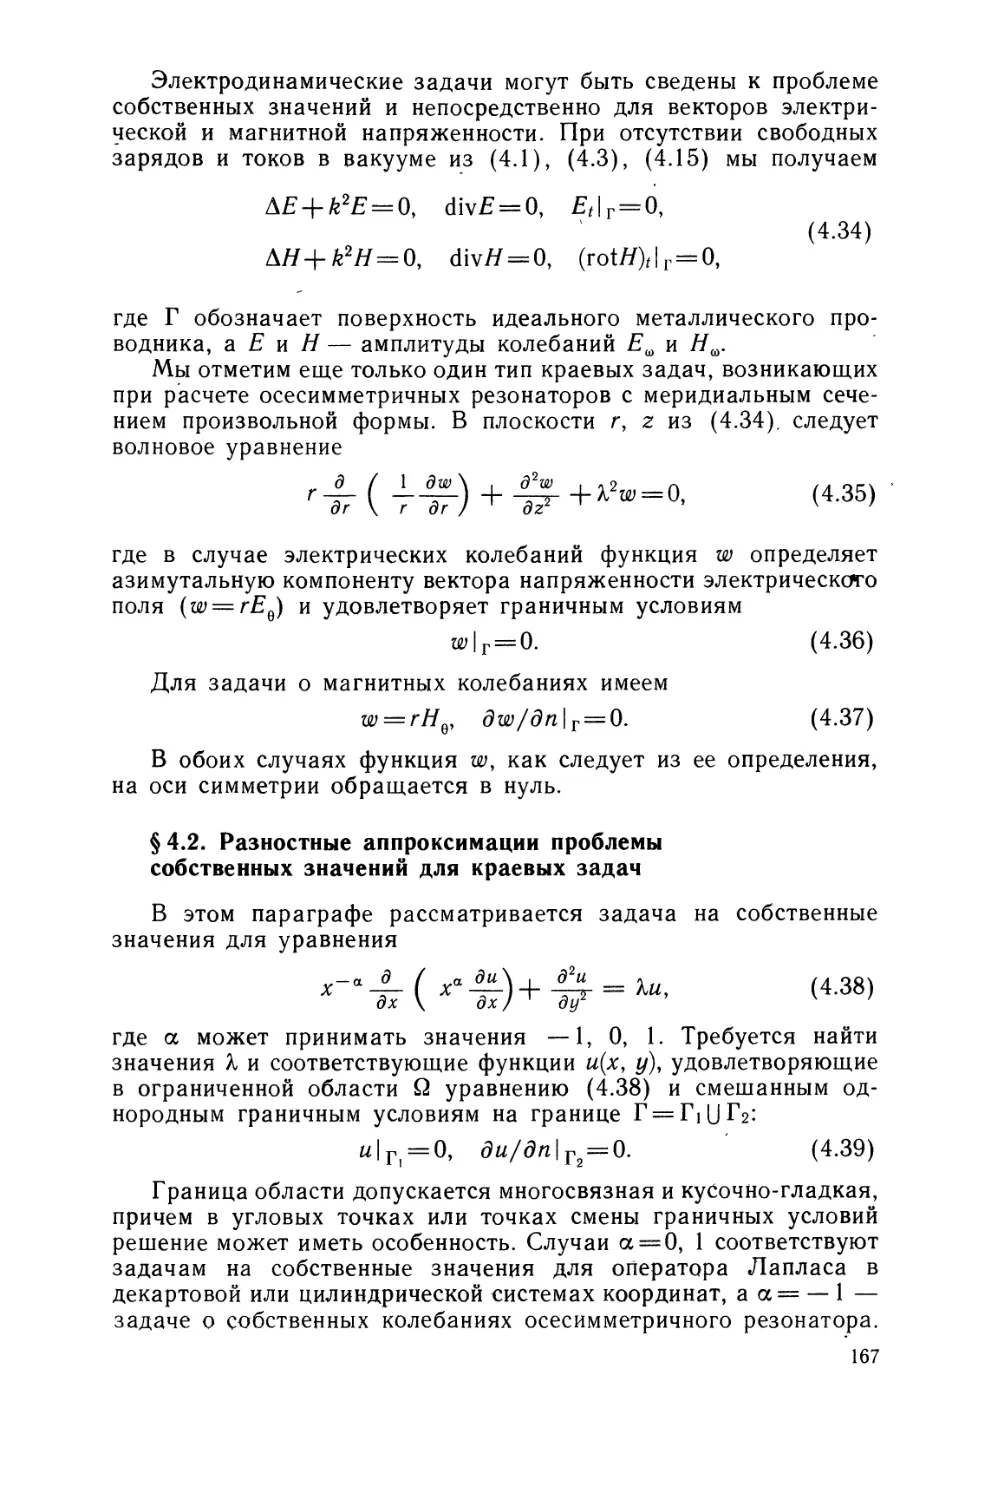 § 4.2. Разностные аппроксимации проблемы собственных значений для  краевых задач.